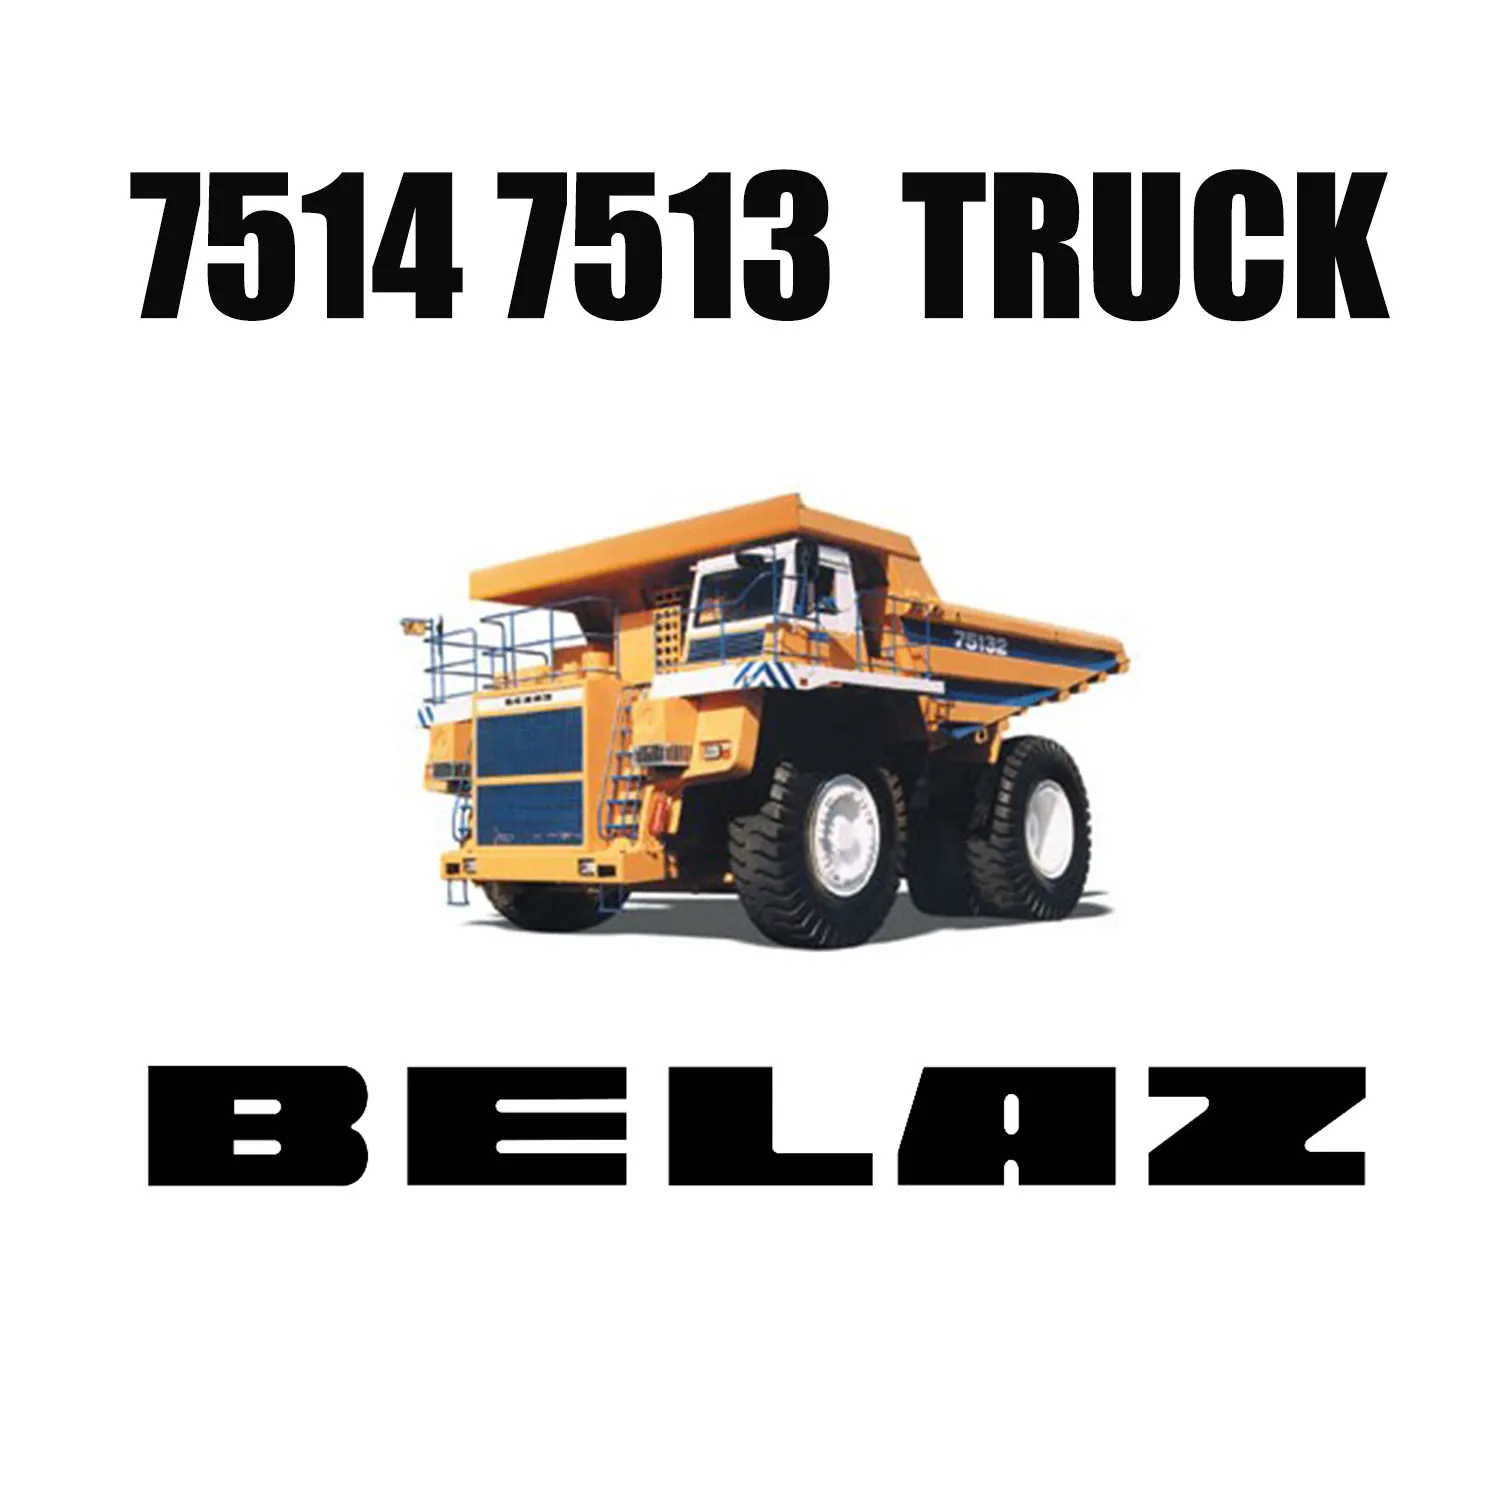 Giant 33.00R51 LUAN Mining OTR TIRES for BELAZ Dump Trucks 7514 7513